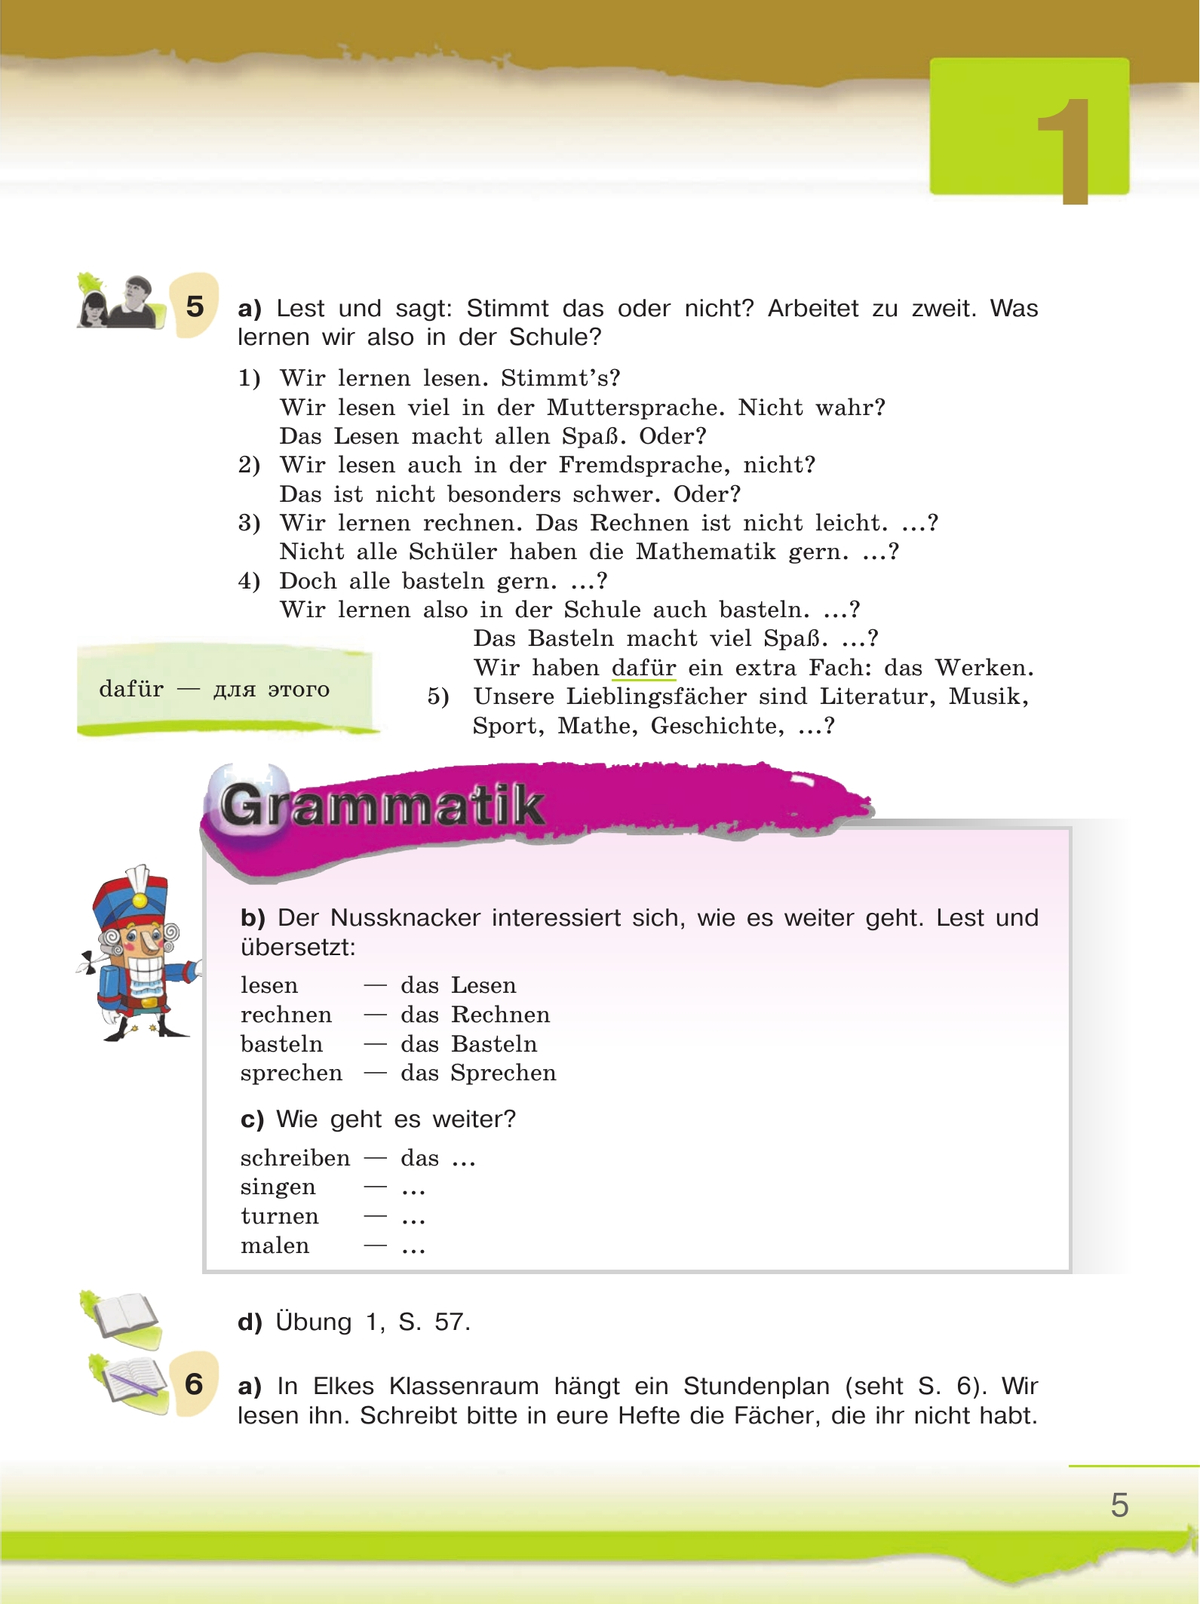 Немецкий язык. 6 класс. Учебник. В 2 ч. Часть 2 9